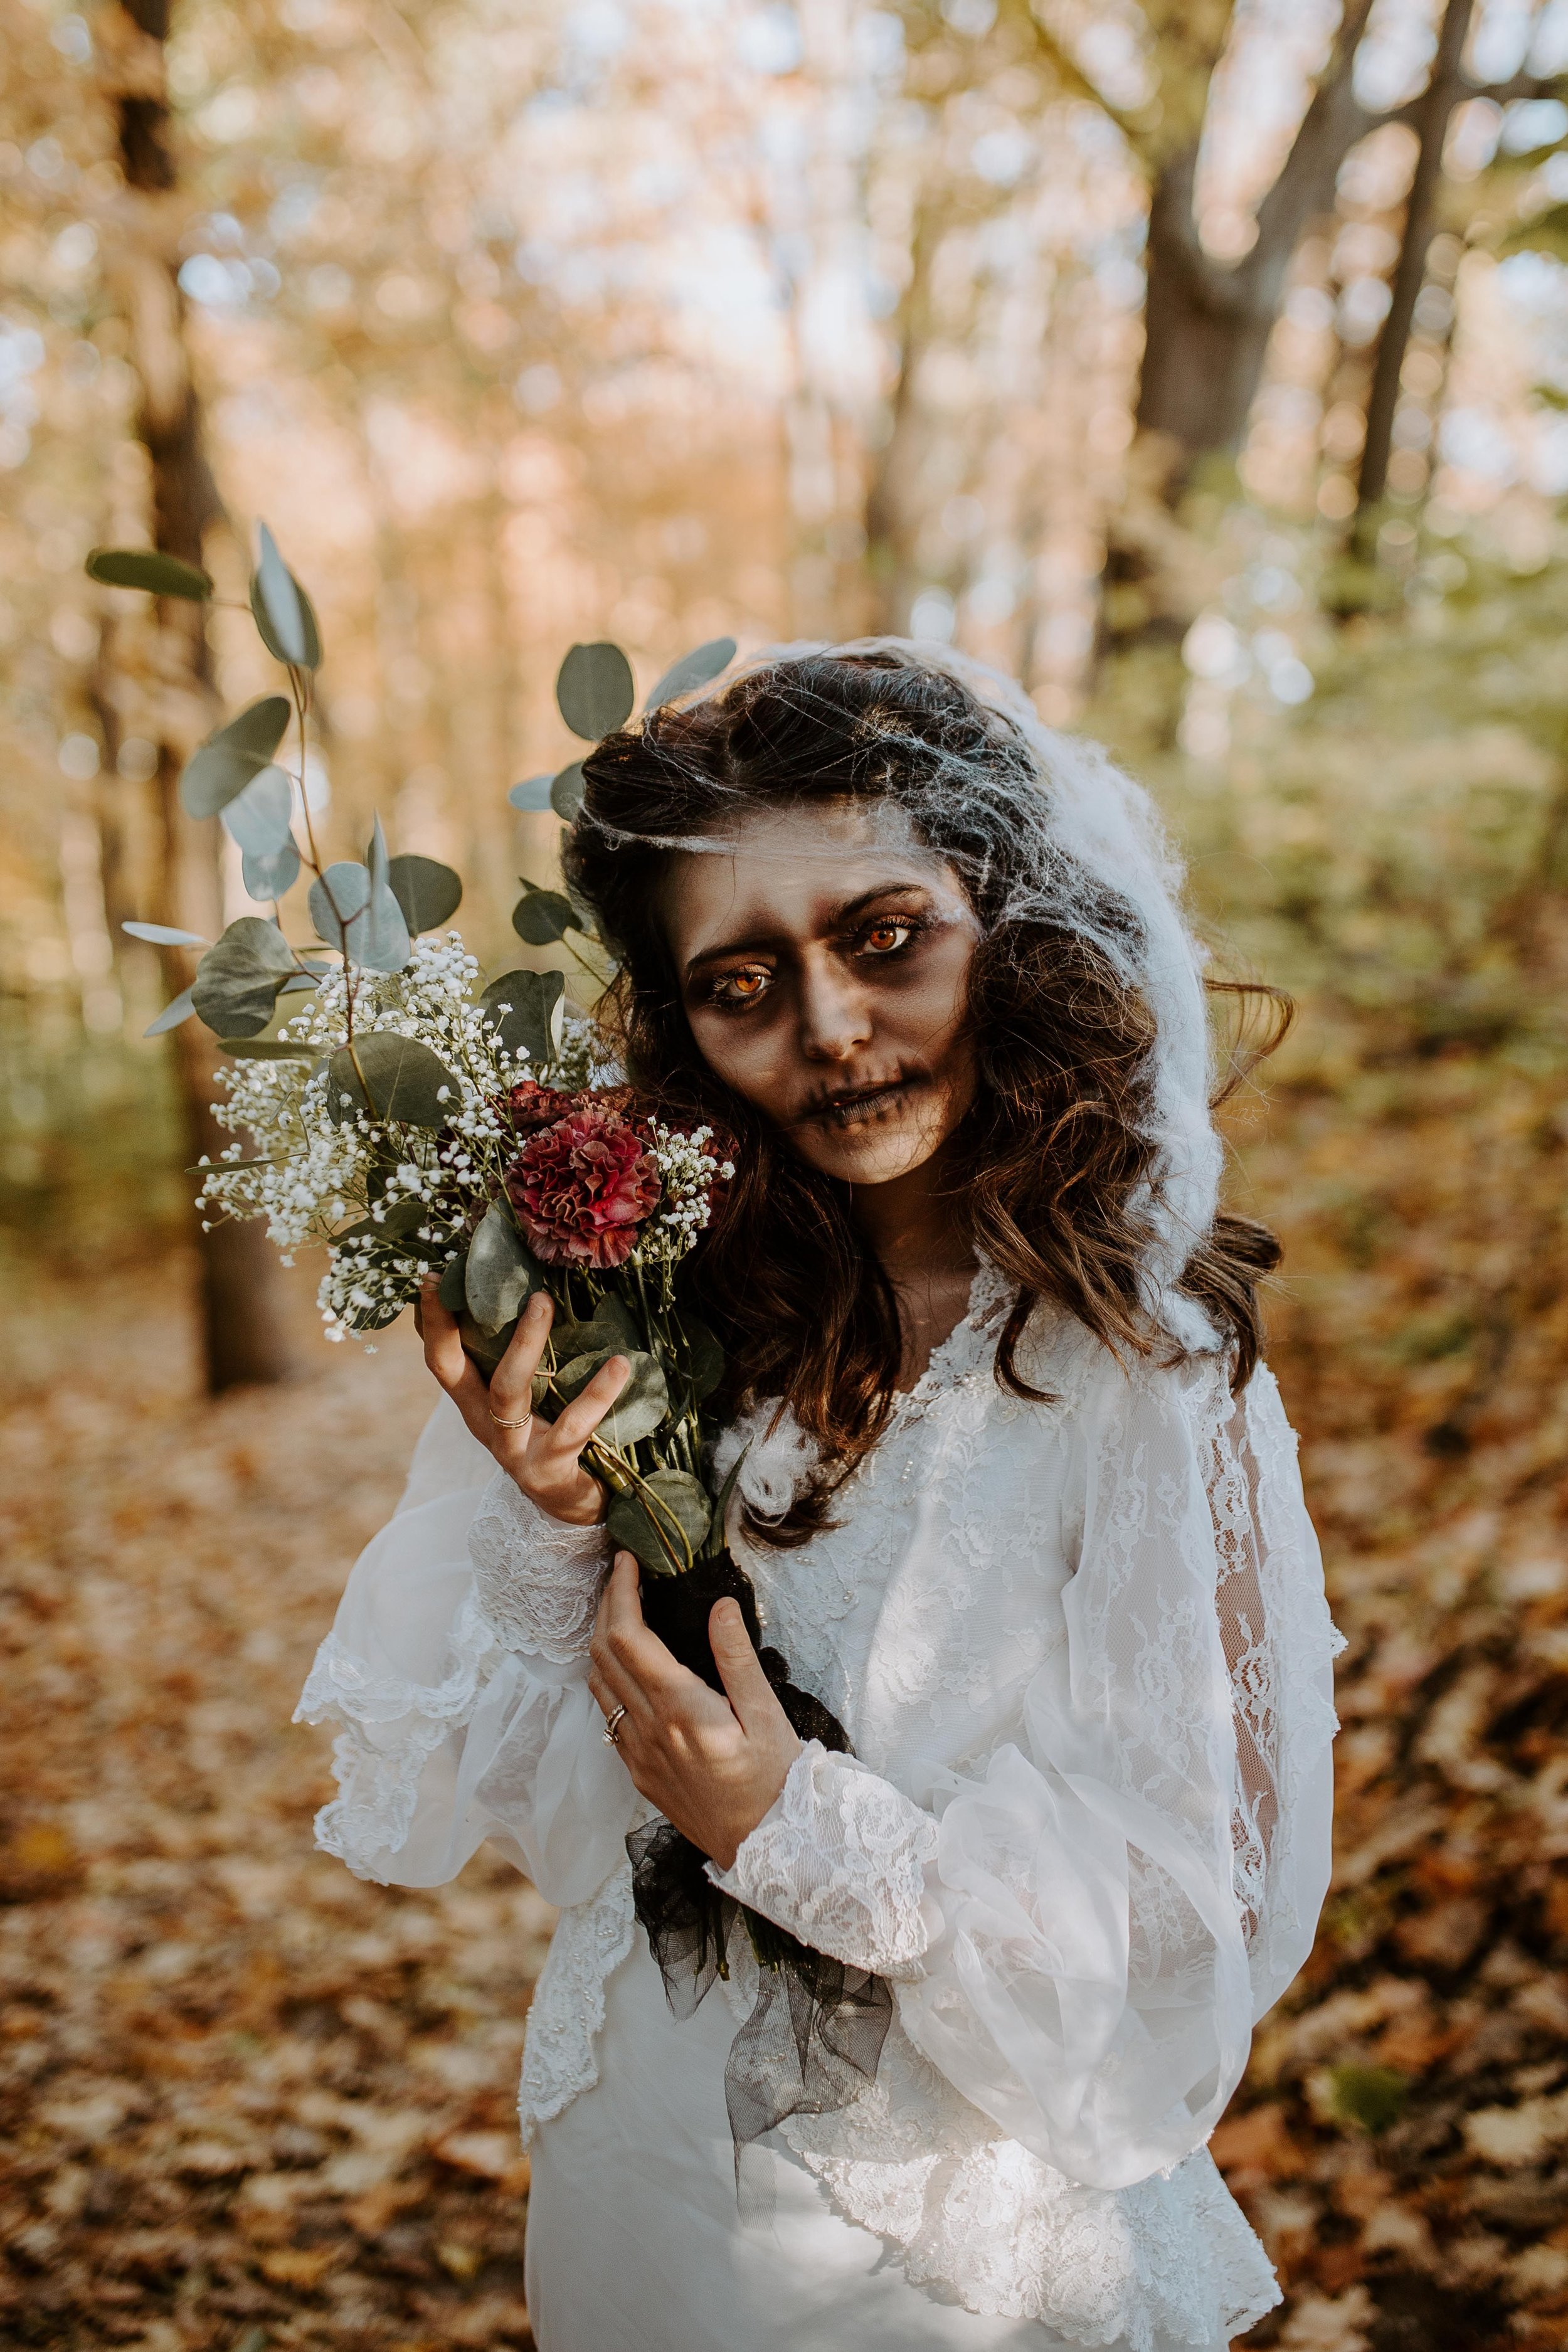 Dead Bride Halloween Costume.jpg